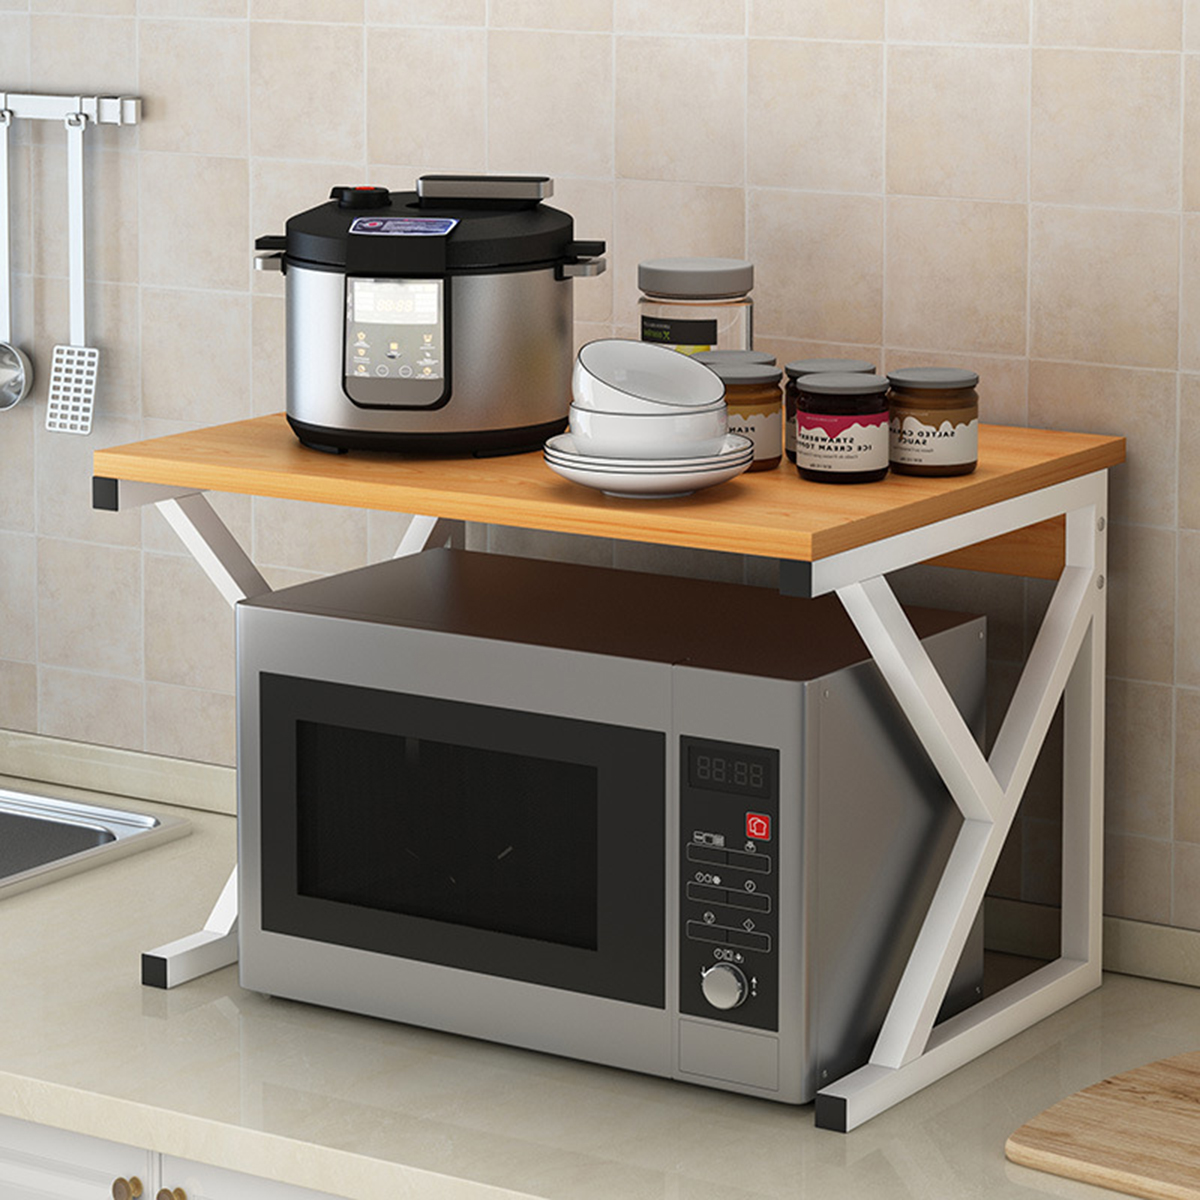 Microwave Oven Rack Kitchen Baker Stand Storage Shelf Kitchen Desktop Space Saving Organizer 85